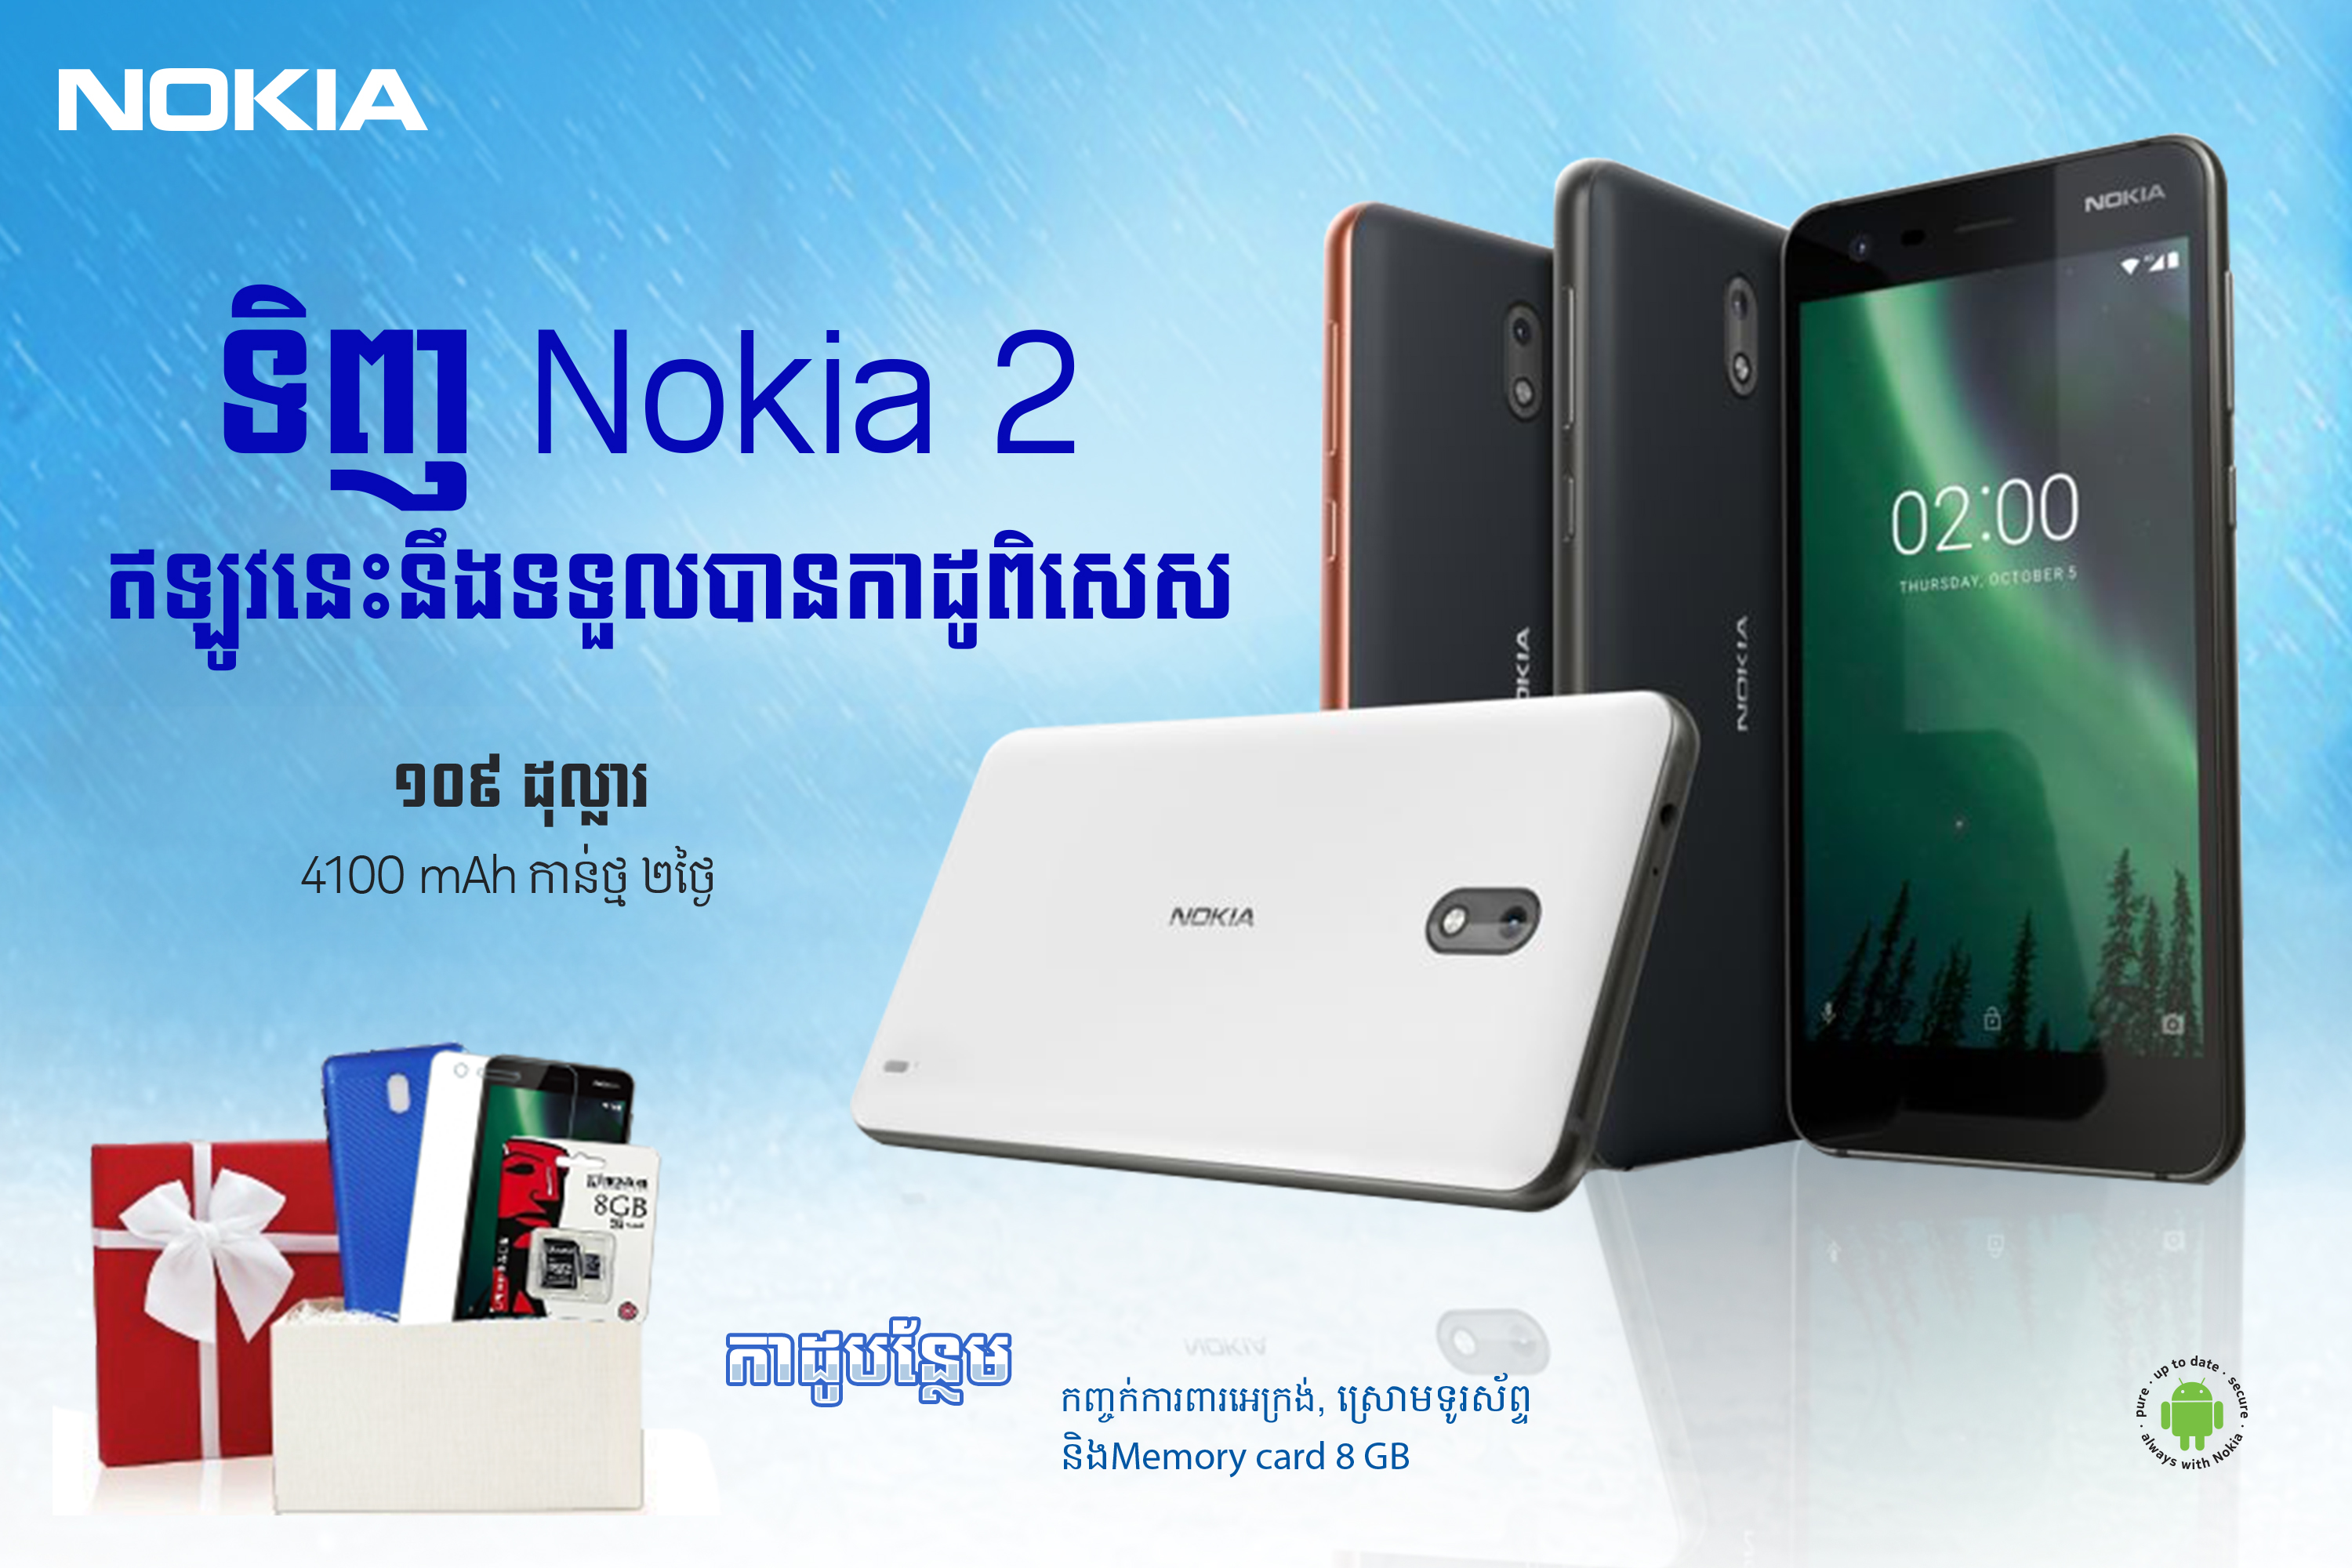 Promotion Nokia 